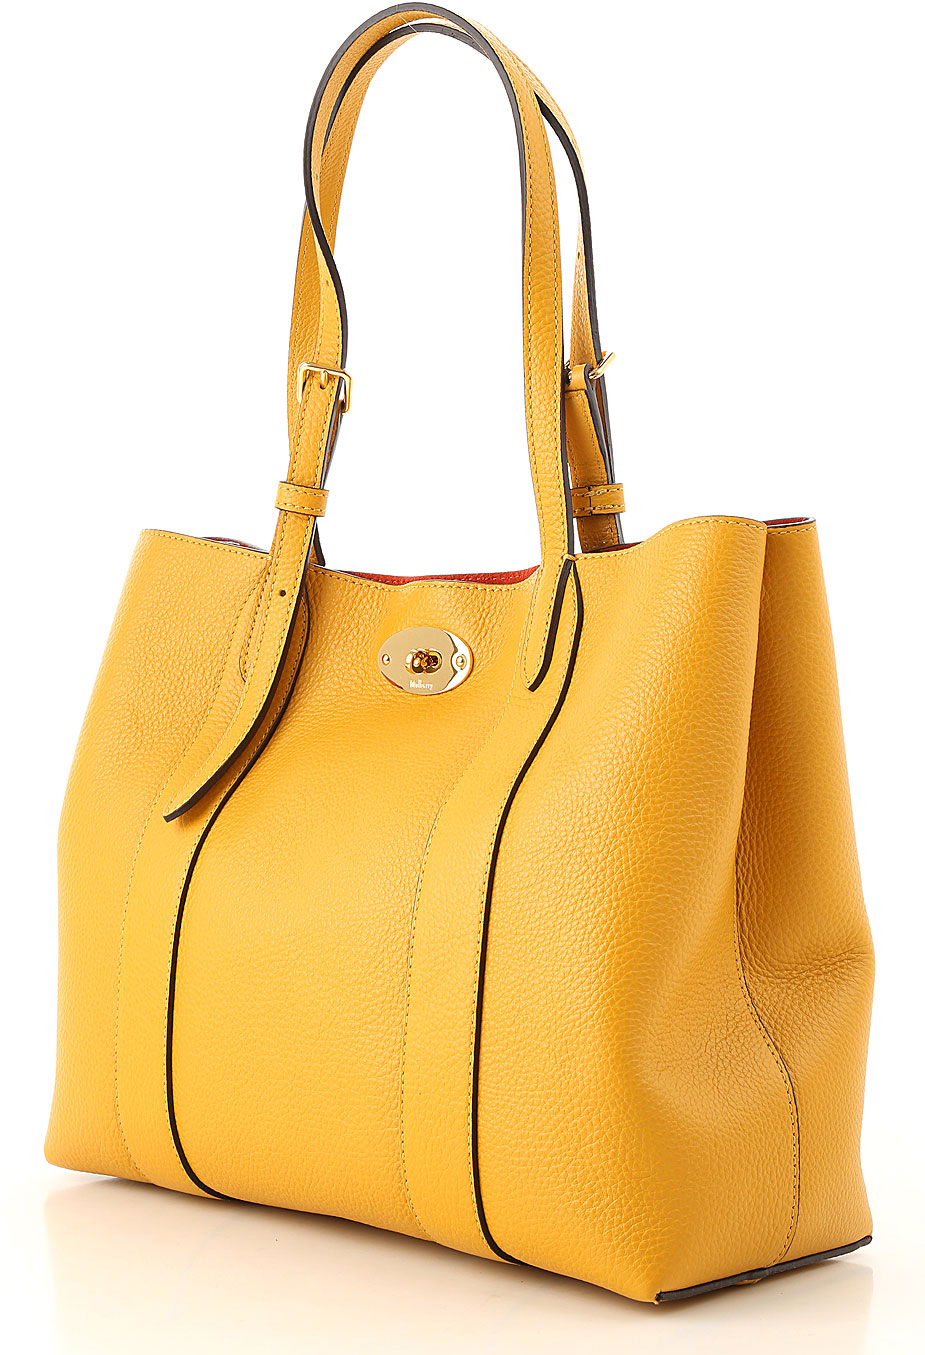 Handbags Mulberry, Style code: hh5276-205n651-n651